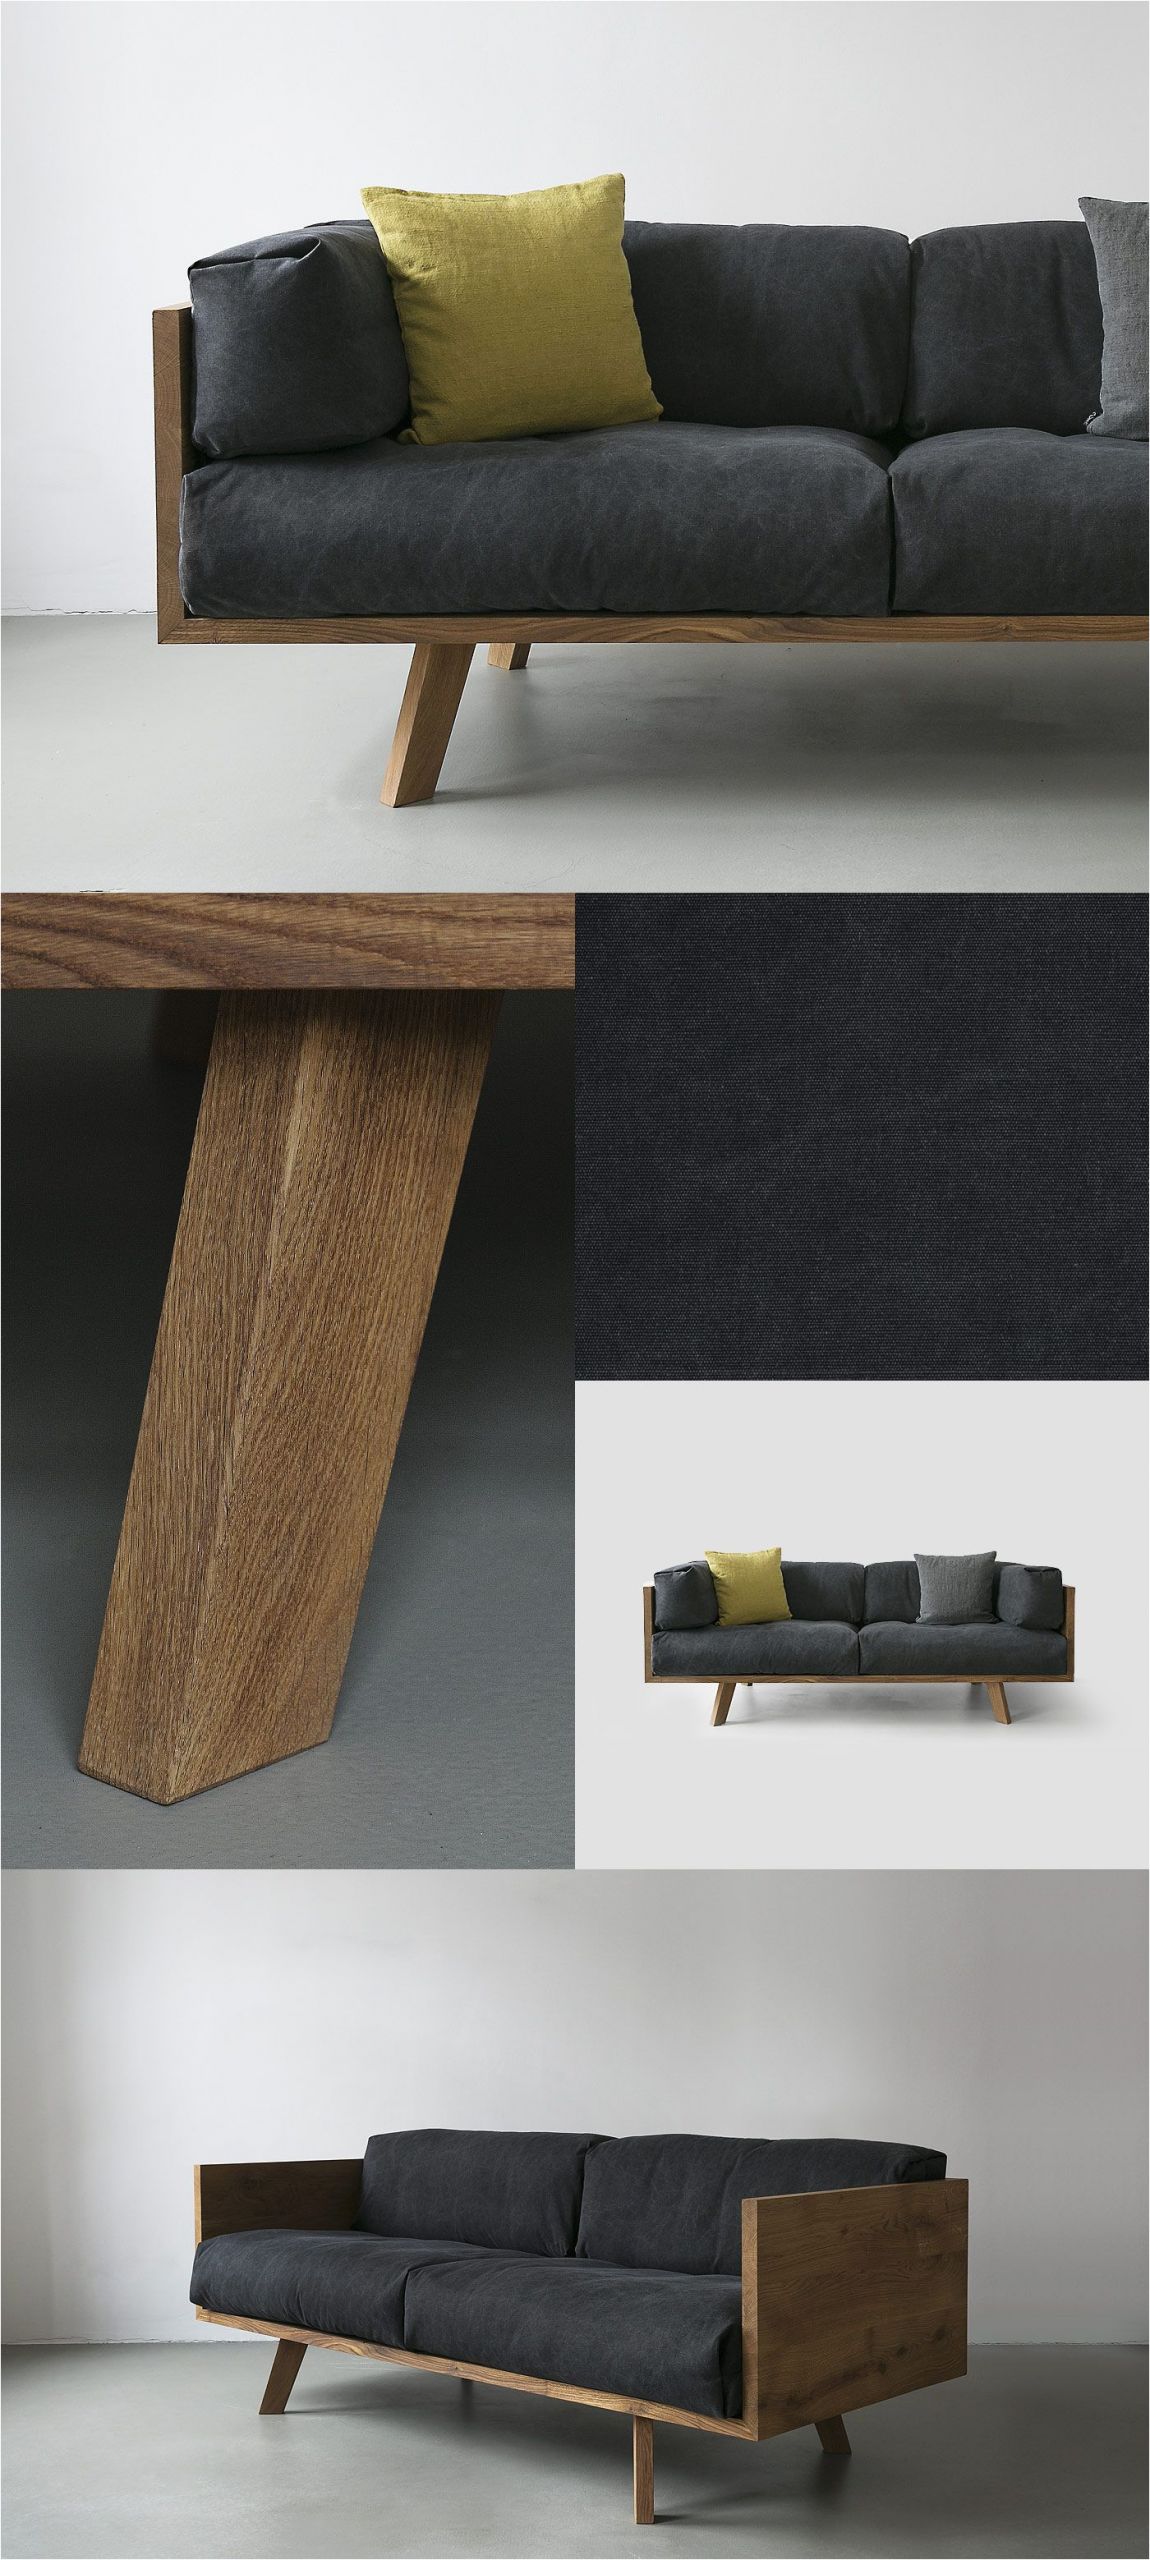 Holz sofa Design Diy Furniture I Möbel Selber Bauen I Couch sofa Daybed I